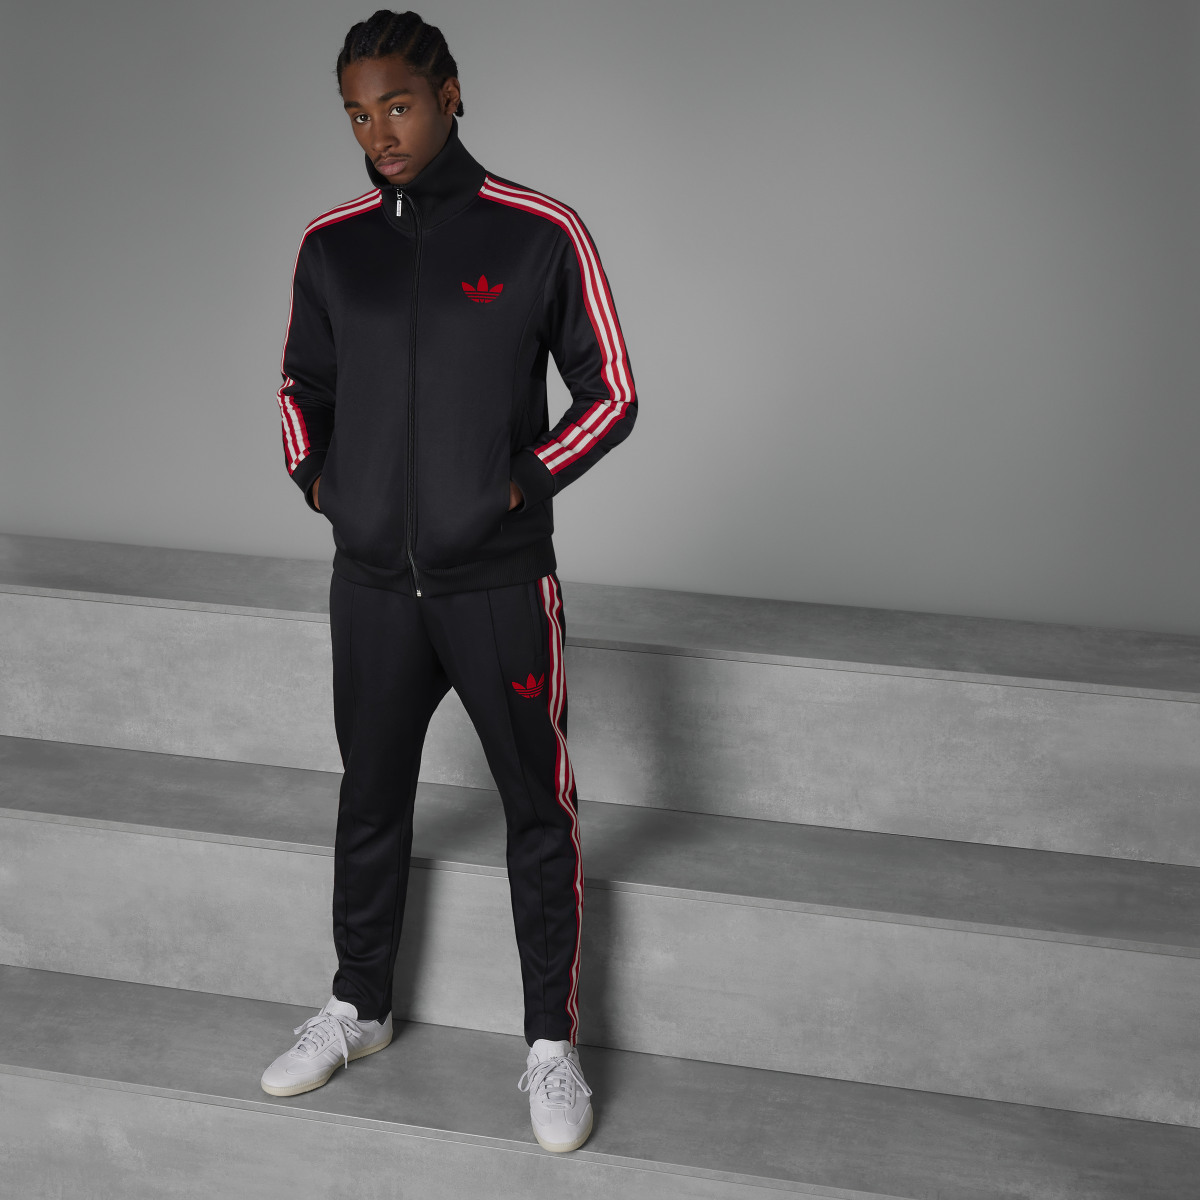 Adidas Track jacket OG Ajax Amsterdam. 5